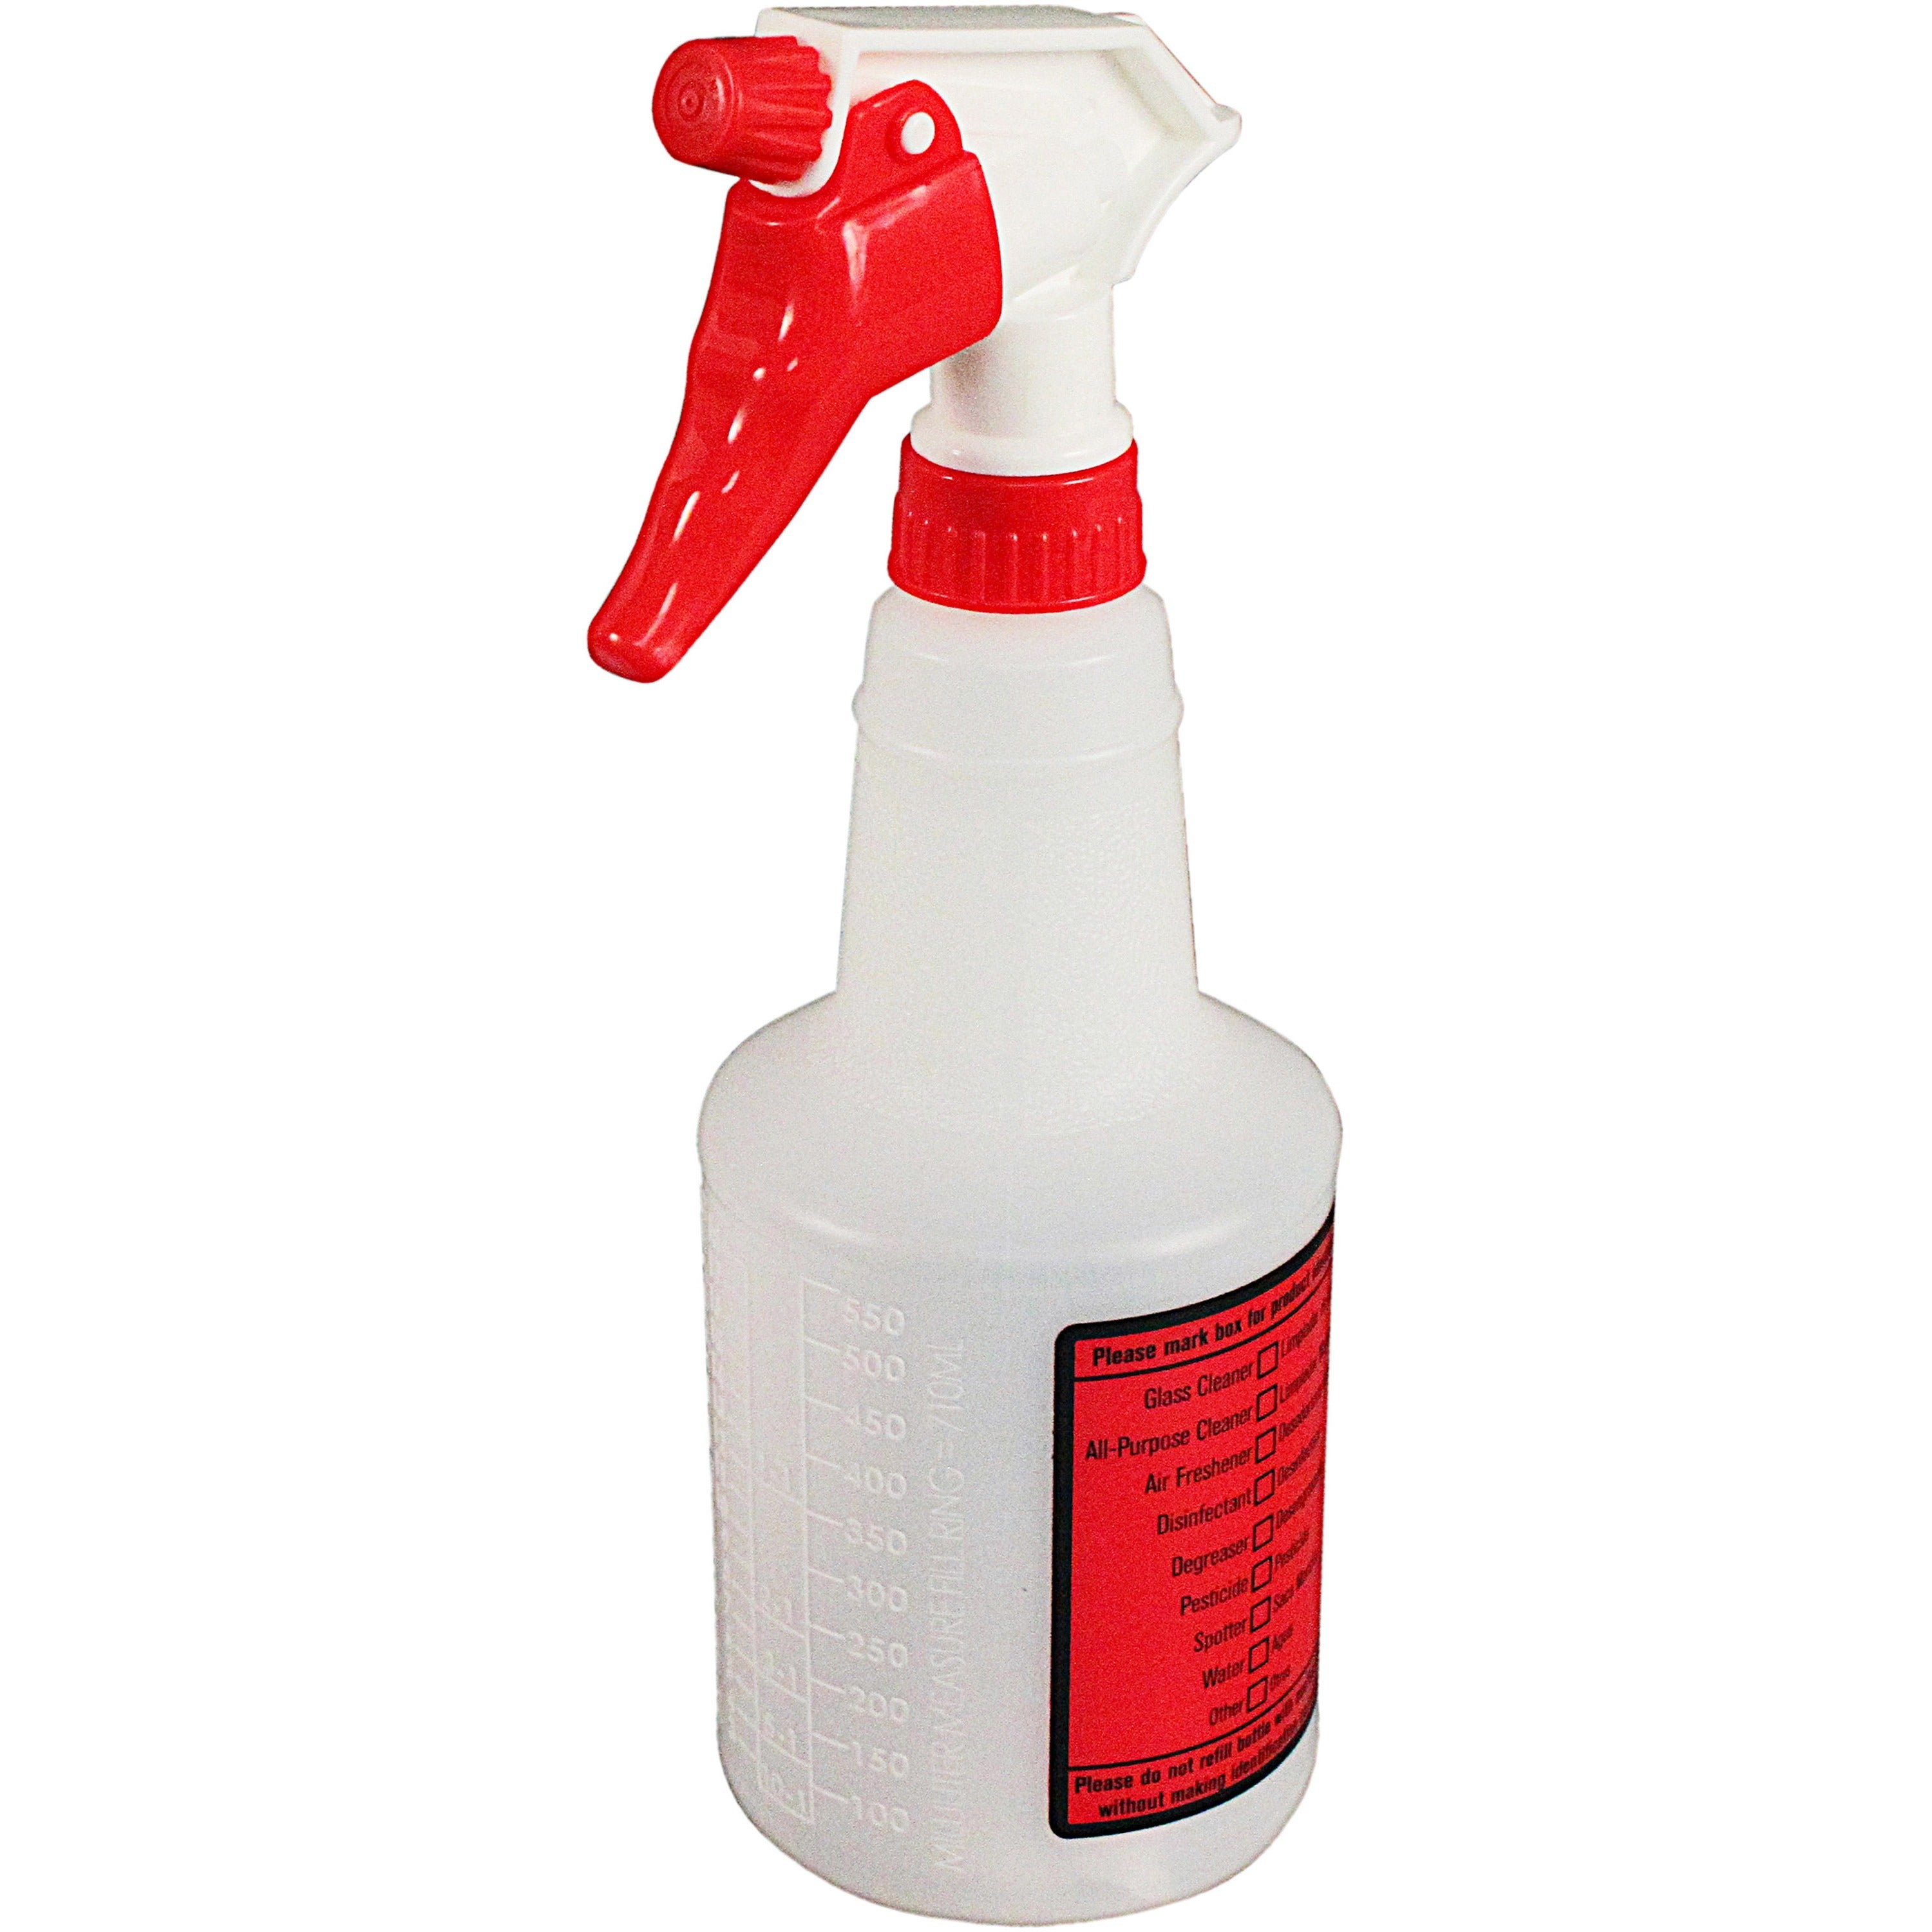 spray-alert-spray-bottle-leak-proof-106-height-45-width-32-carton-white_imp5024ssct - 3